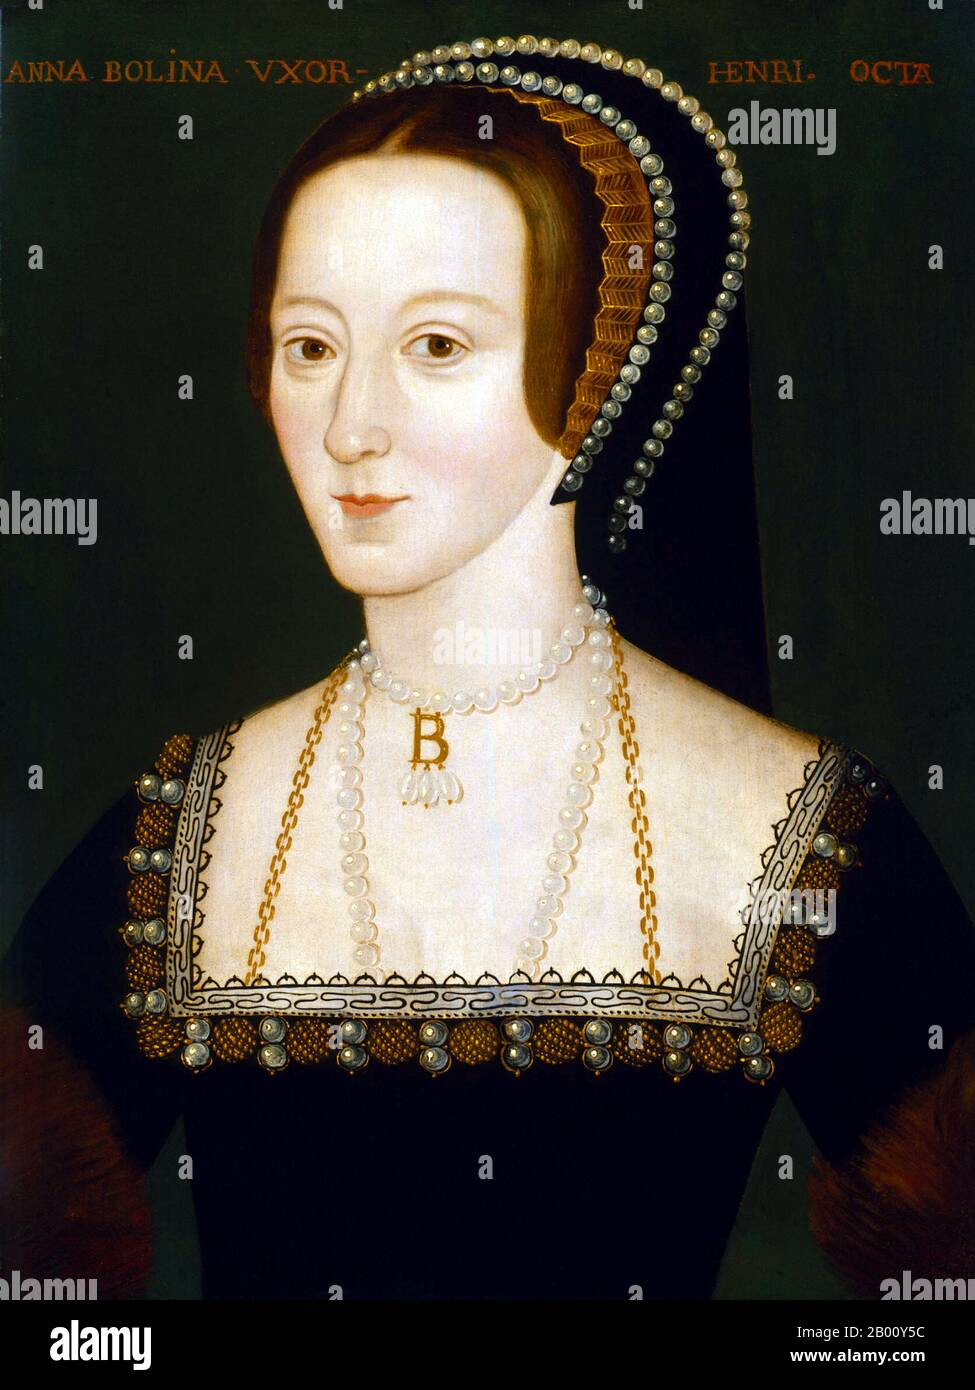 Angleterre : Anne Boleyn (1501/1507-19), 1536 Reine d'Angleterre (1533-1536) et deuxième épouse de Henry VIII d'Angleterre. Huile sur le tableau de bord par un artiste non identifié,. 1533-1536. Anne a été couronnée reine d'Angleterre le 1er juin 1533. Le 7 septembre, elle a donné naissance à la future Elizabeth I d'Angleterre. Toutefois, au mécontentement de Henry, elle n'a pas réussi à produire un héritier mâle. Henry n'a pas été totalement découragé, car il a dit qu'il aimait Elizabeth et qu'un fils suivrait sûrement. Trois erreurs ont suivi, cependant, et en mars 1536, Henry courrait Jane Seymour. Elle a été décapité le 19 mai. Banque D'Images